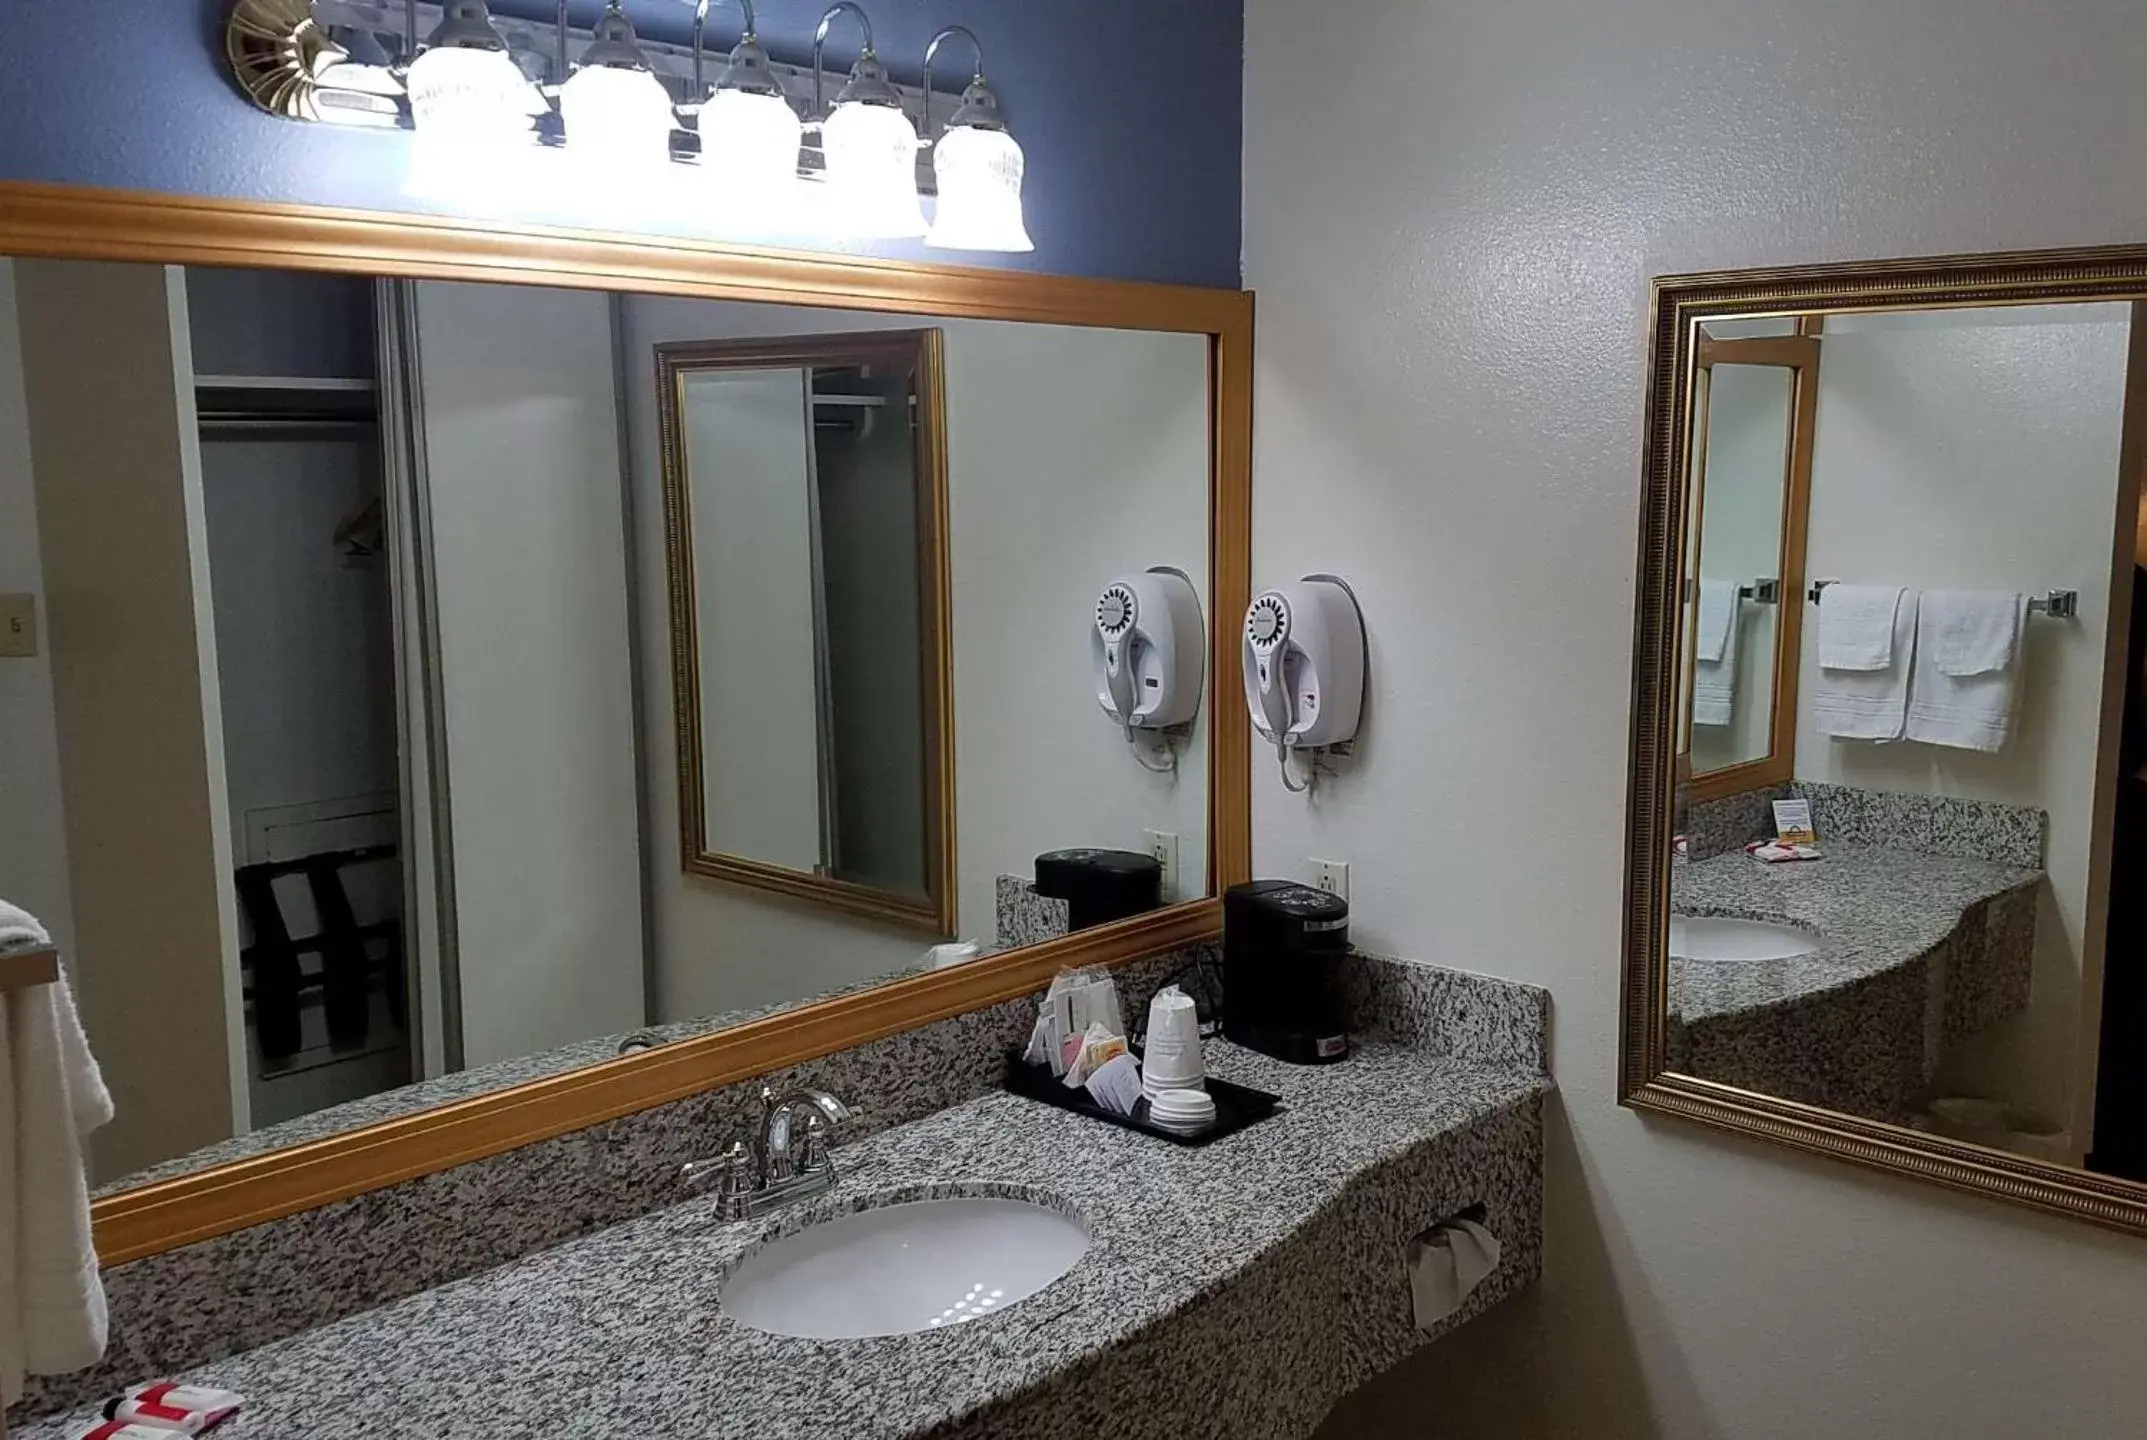 Bedroom, Bathroom in Days Inn by Wyndham Grand Junction